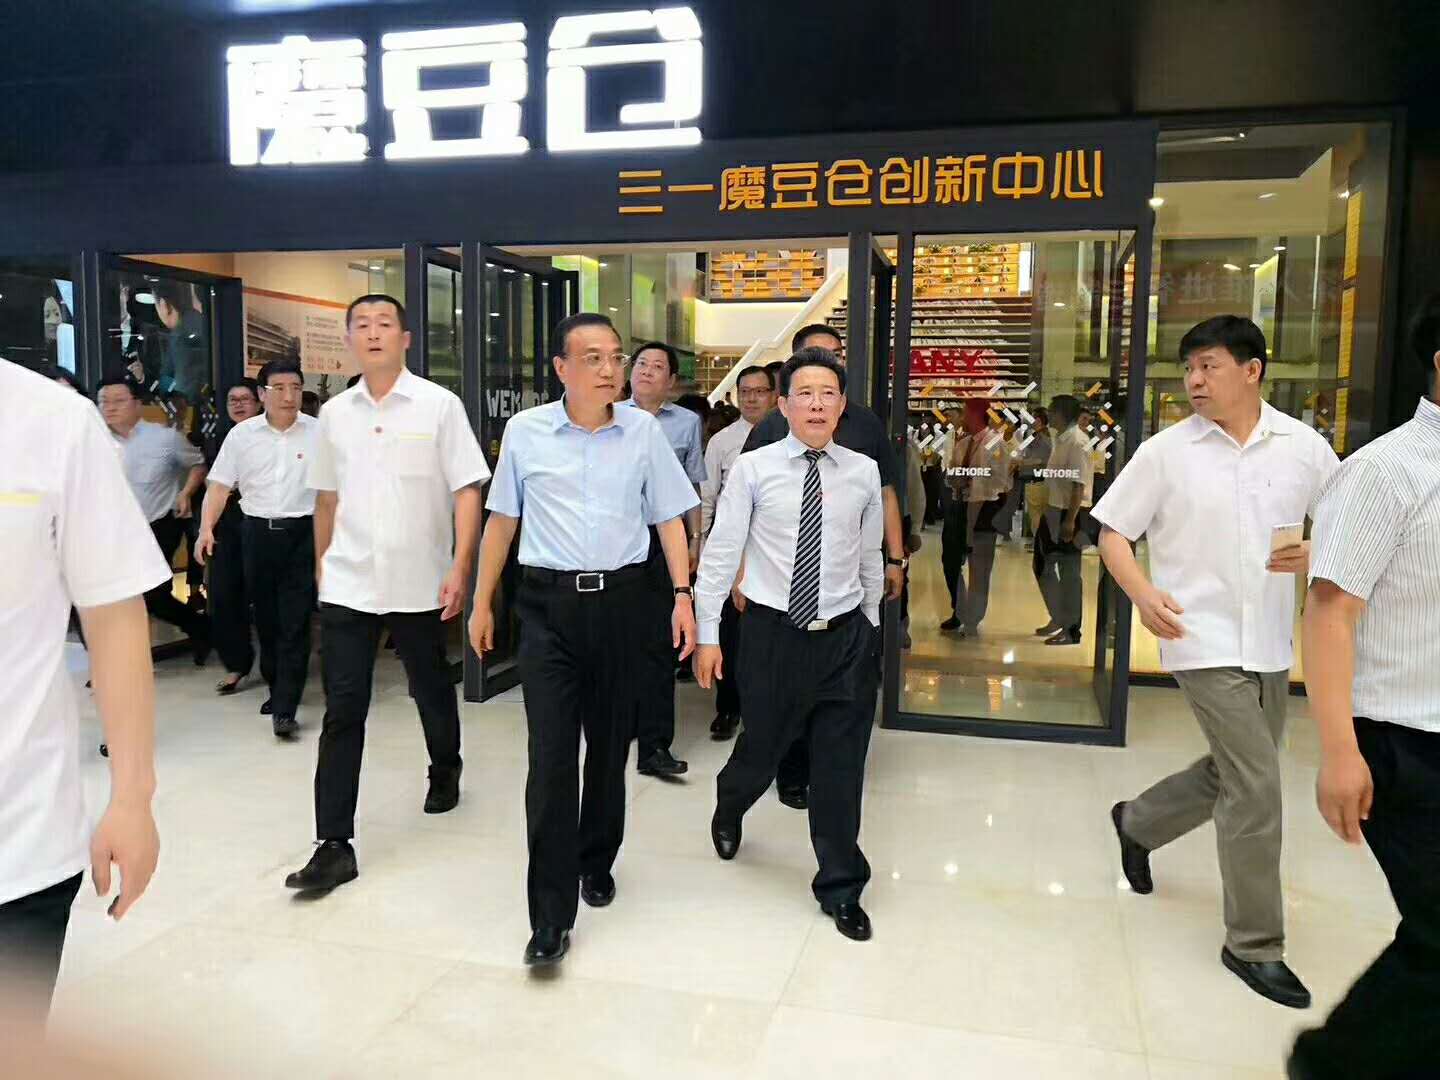 Una calurosa bienvenida al Primer Ministro-Sr. Visita de Keqiang Lee al edificio de oficinas CSCERAMIC.